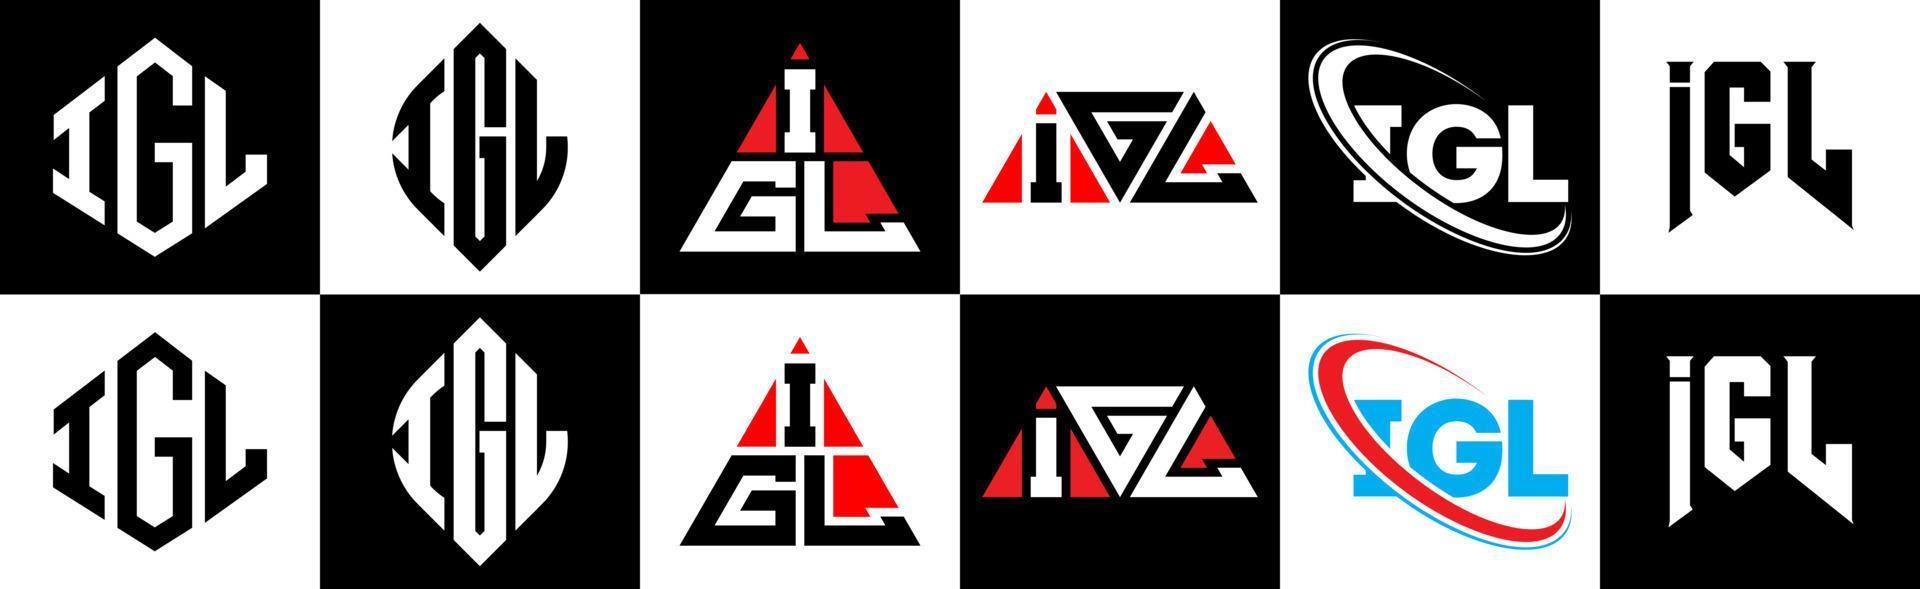 Igl-Buchstaben-Logo-Design in sechs Stilen. igl polygon, kreis, dreieck, hexagon, flacher und einfacher stil mit schwarz-weißem buchstabenlogo in einer zeichenfläche. igl minimalistisches und klassisches Logo vektor